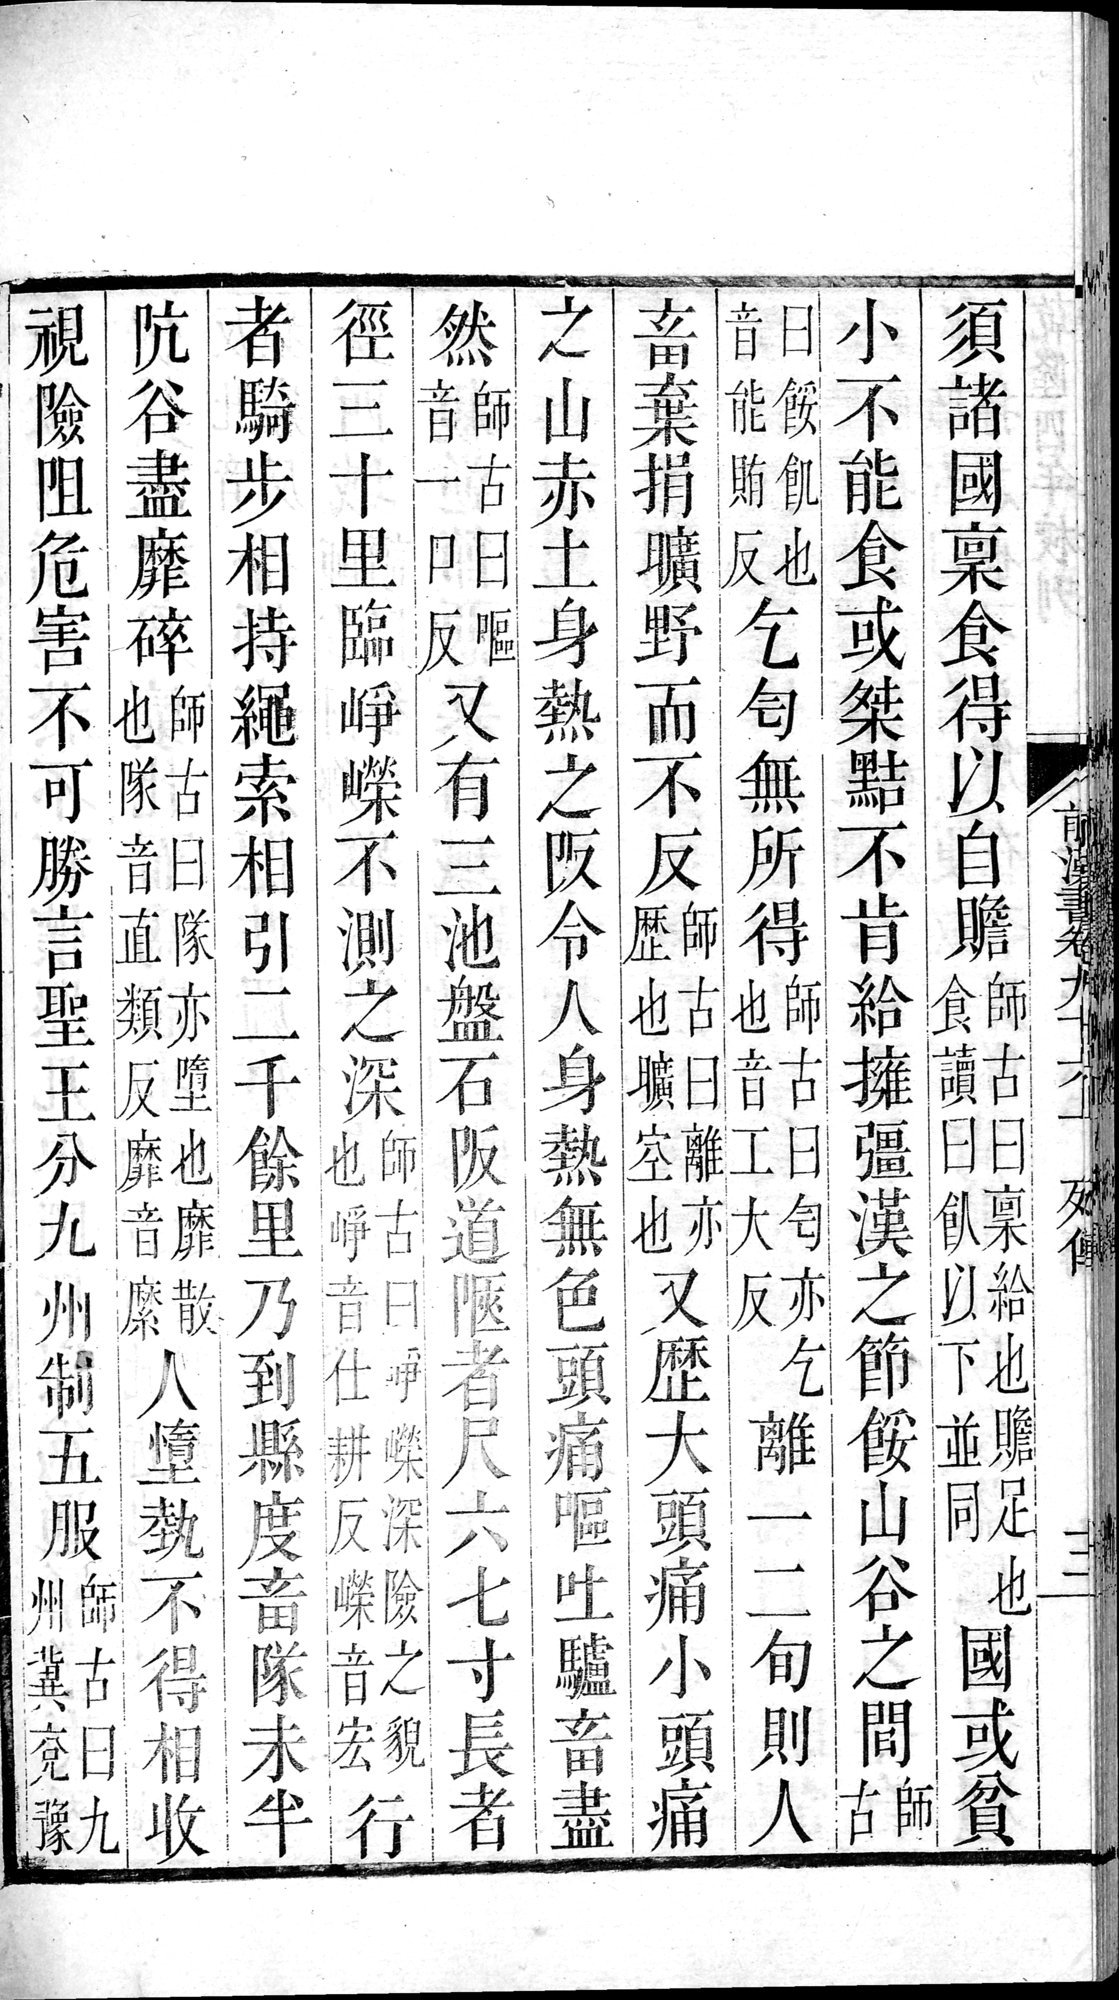 前漢書 : vol.96 top / Page 24 (Grayscale High Resolution Image)